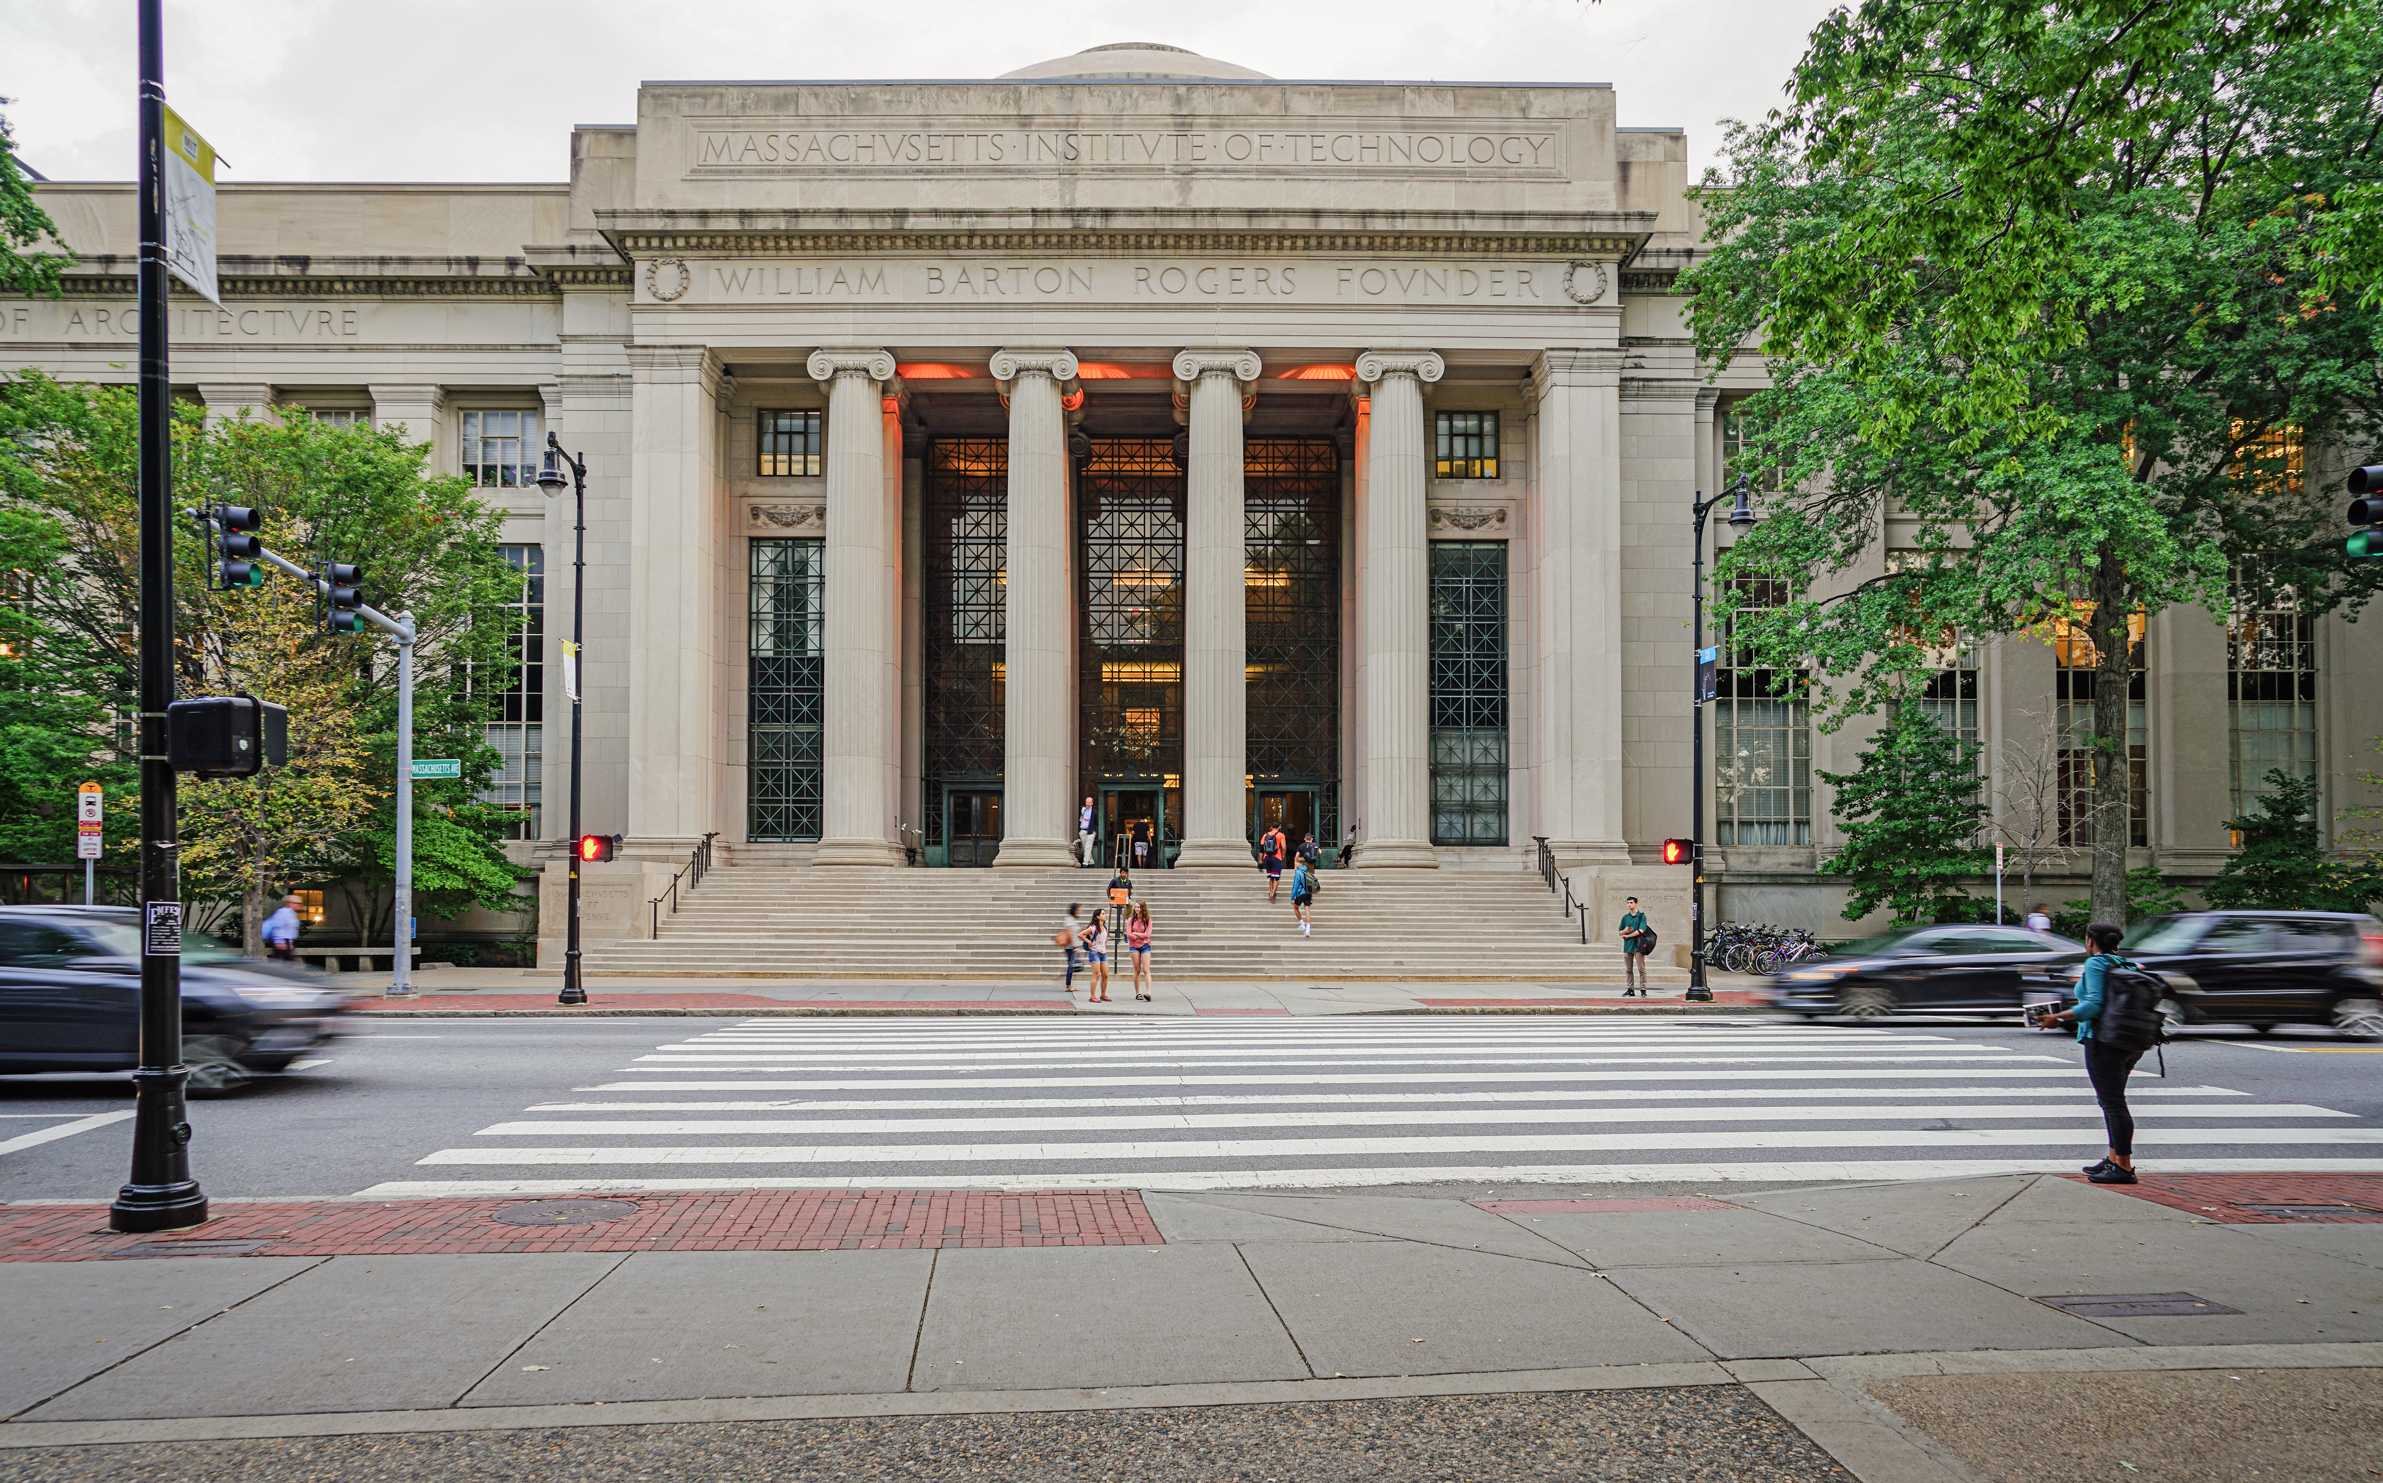 Viện Công nghệ Massachusetts (MIT), một trong những trường đại học nghiên cứu hàng đầu thế giới, đặc biệt về kỹ thuật và khoa học. (Ảnh: EQRoy/Shutterstock)